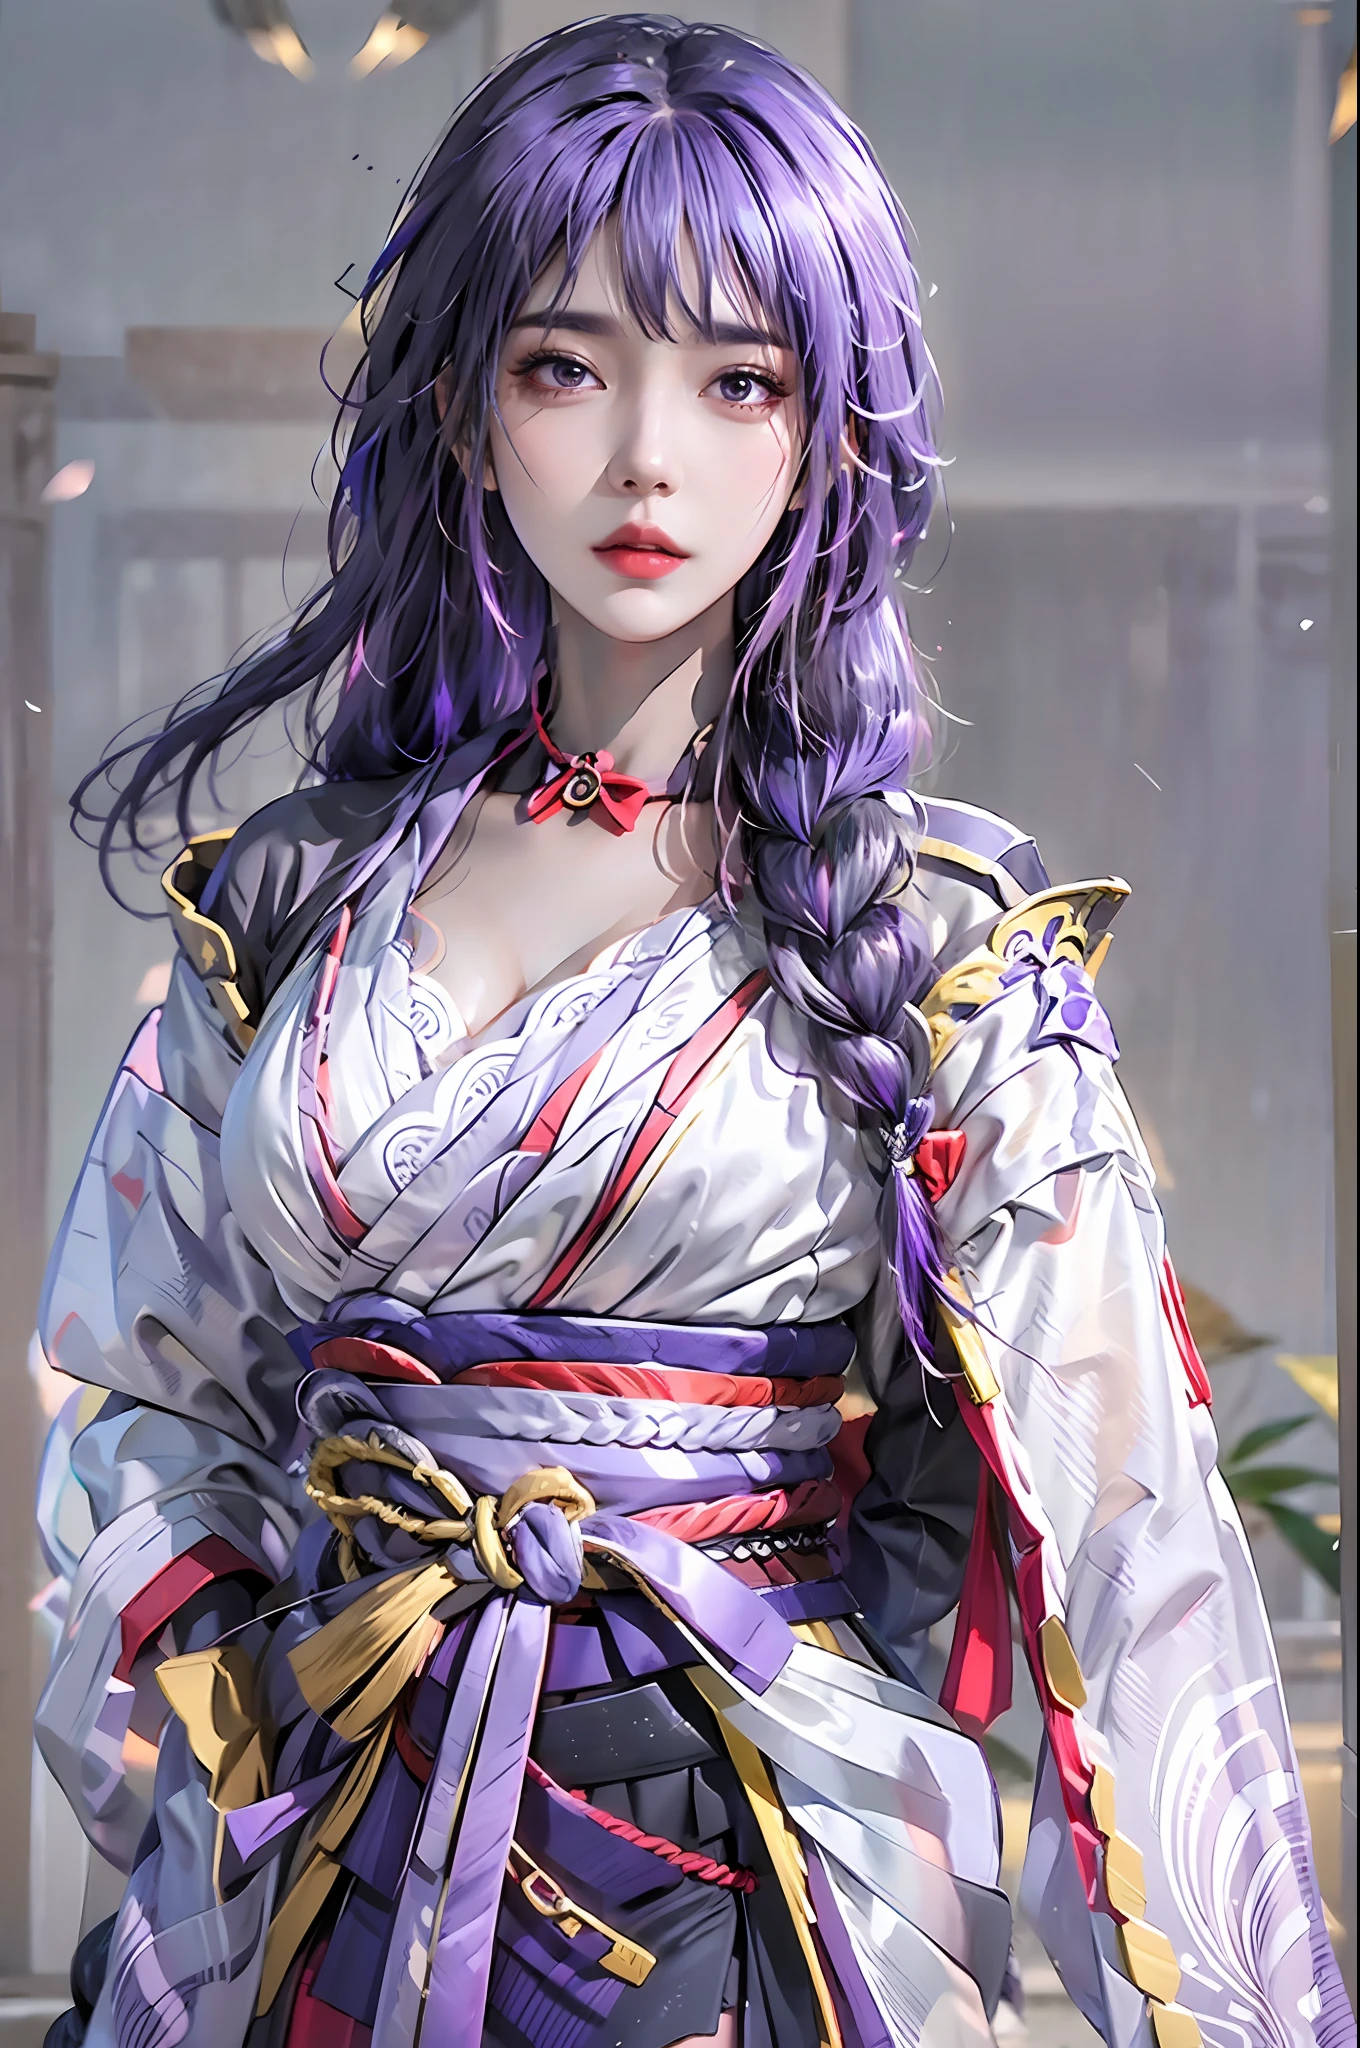 fotorrealista, alta resolução, 1 garota, quadris para cima, cabelo roxo, franja romba, trança, mangas largas, hair ornament, olhos lindos, mama normal, fantasia de shogun raiden